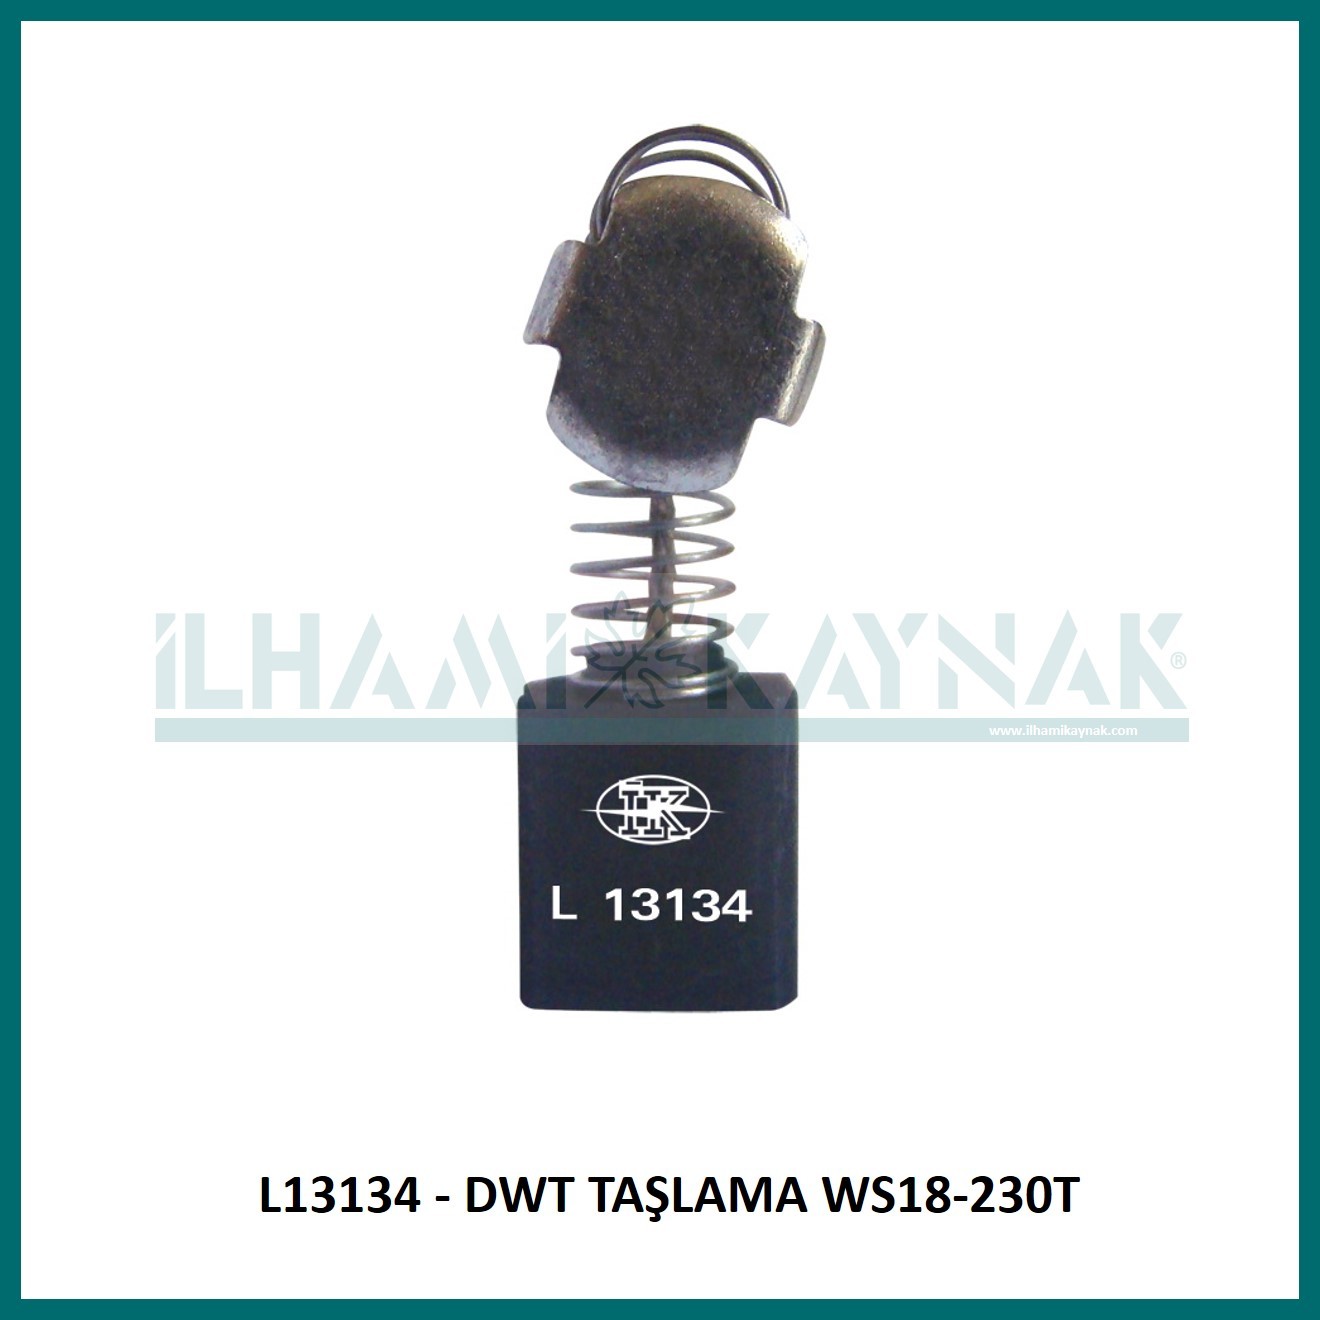 L13134 - DWT TAŞLAMA WS18-230T - 8*14*18 mm - Minimum Satın Alım: 10 Adet.